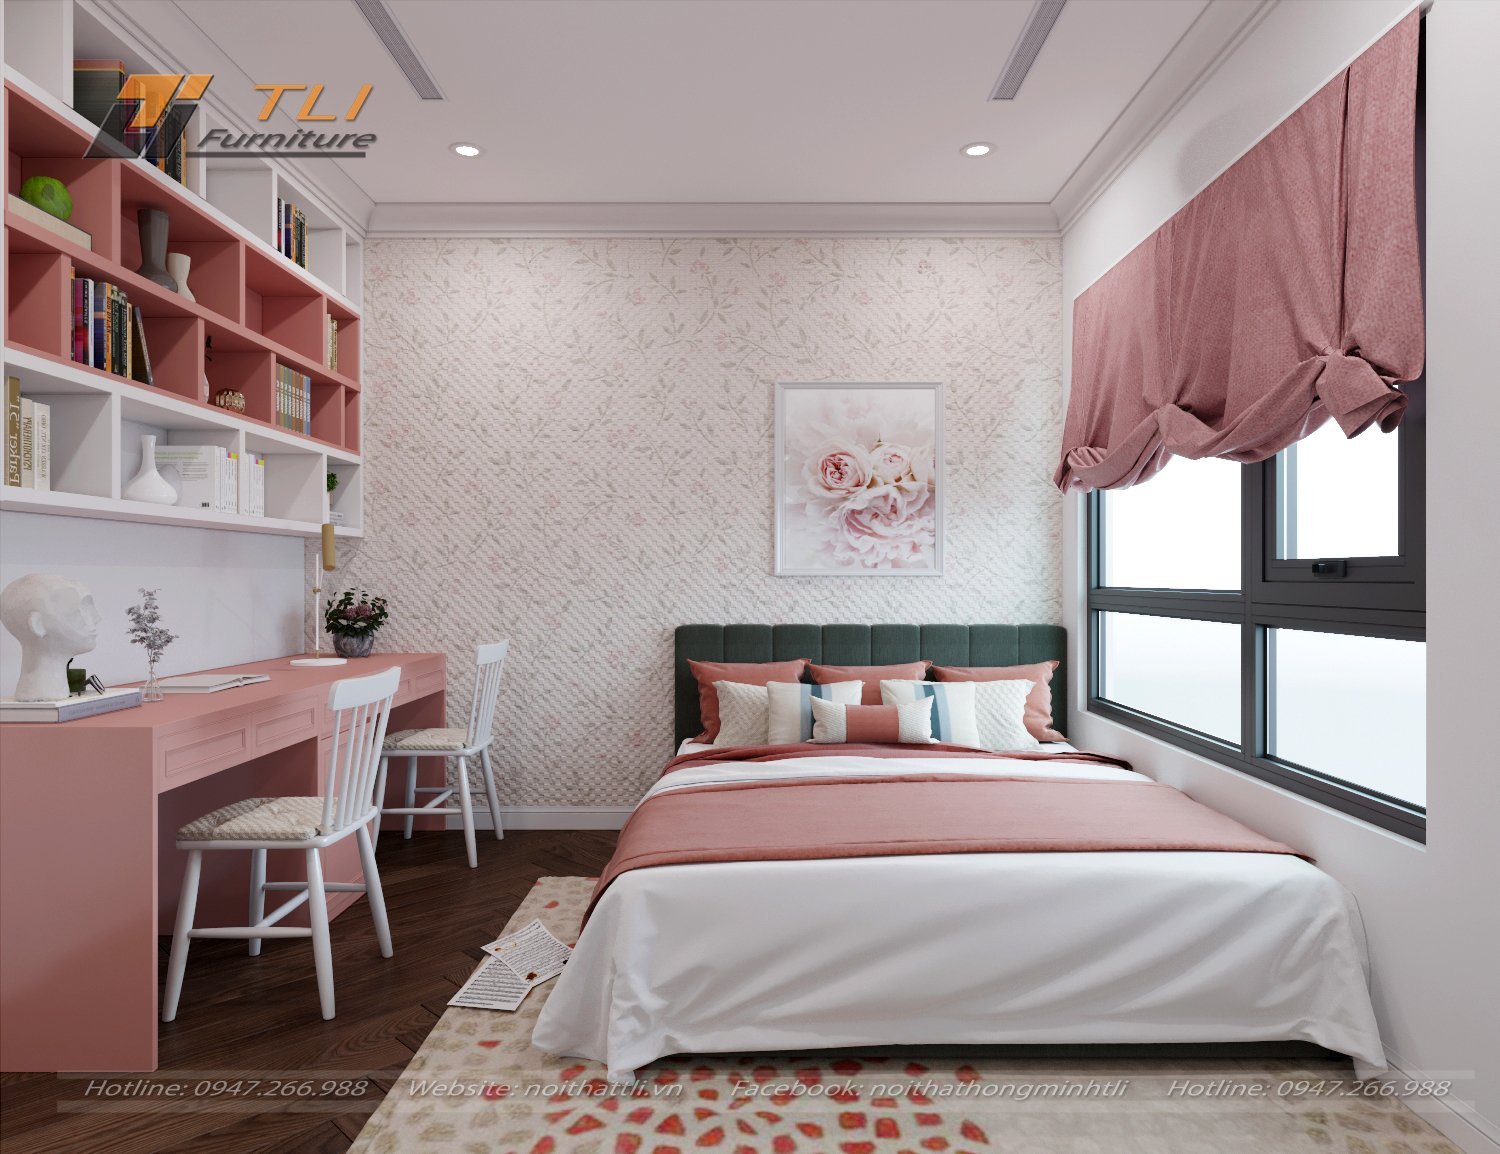 Bí quyết thiết kế nội thất phòng ngủ đẹp và ấm cúng